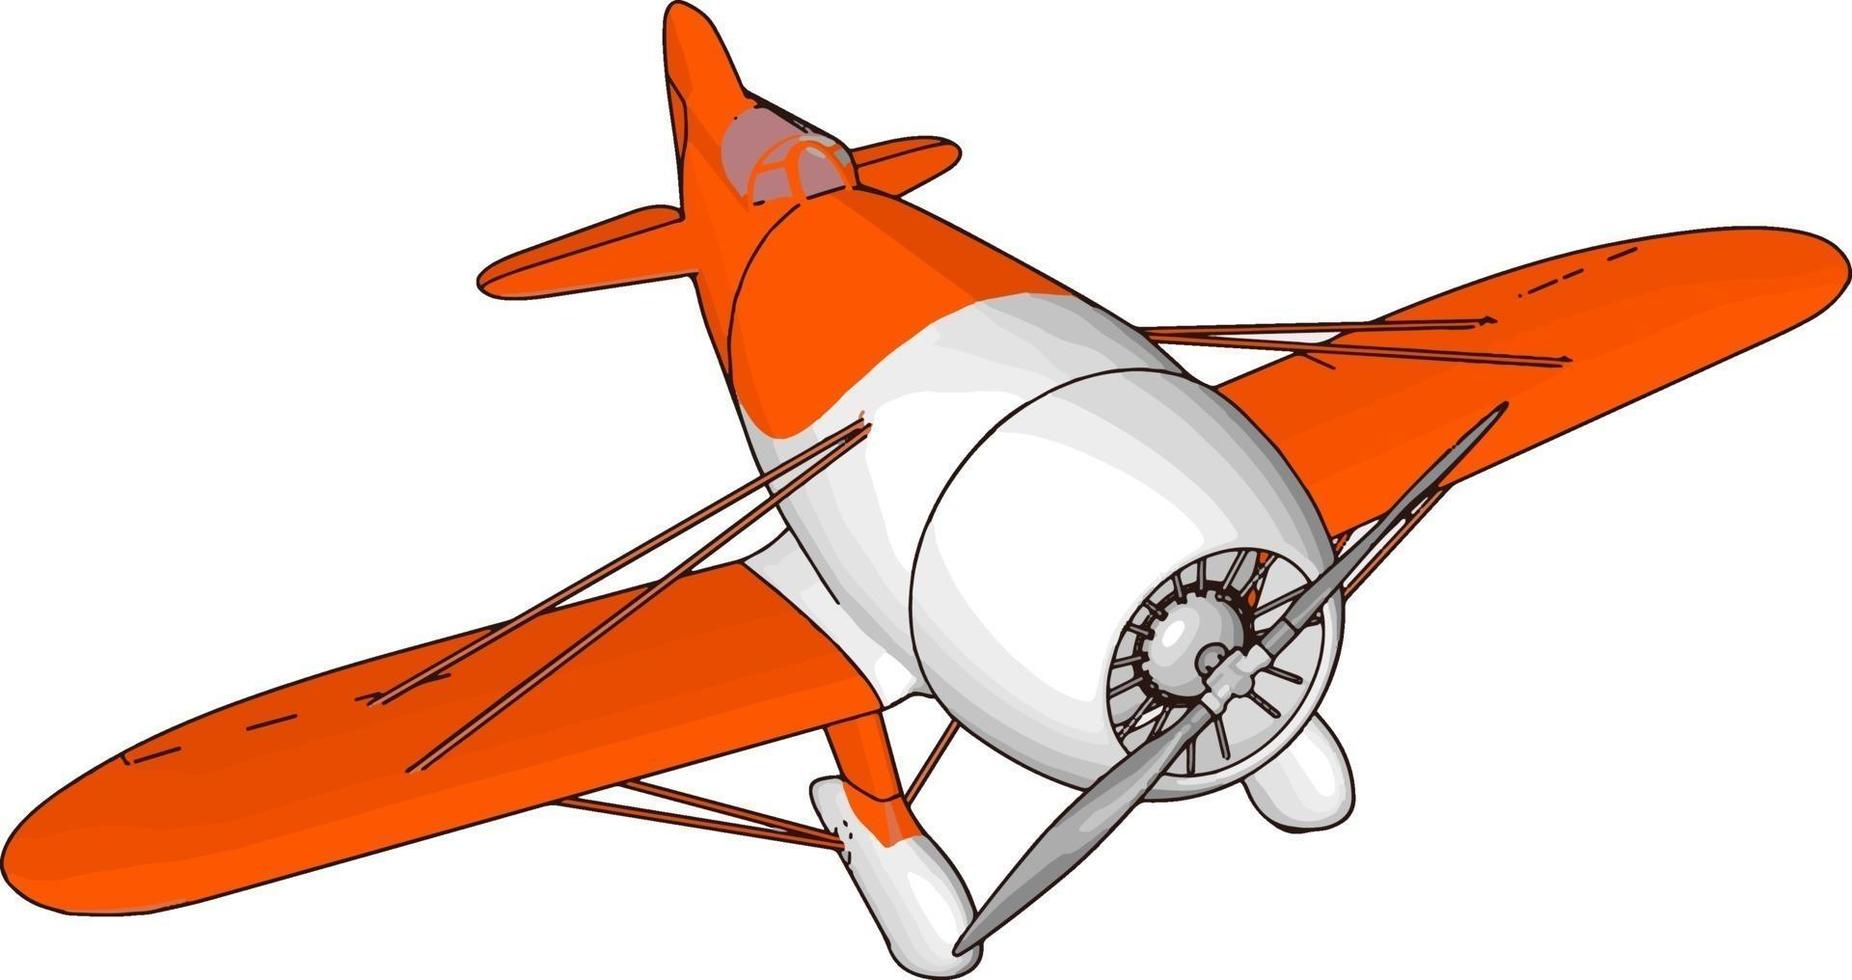 ancien avion rétro blanc et rouge, illustration, vecteur sur fond blanc.